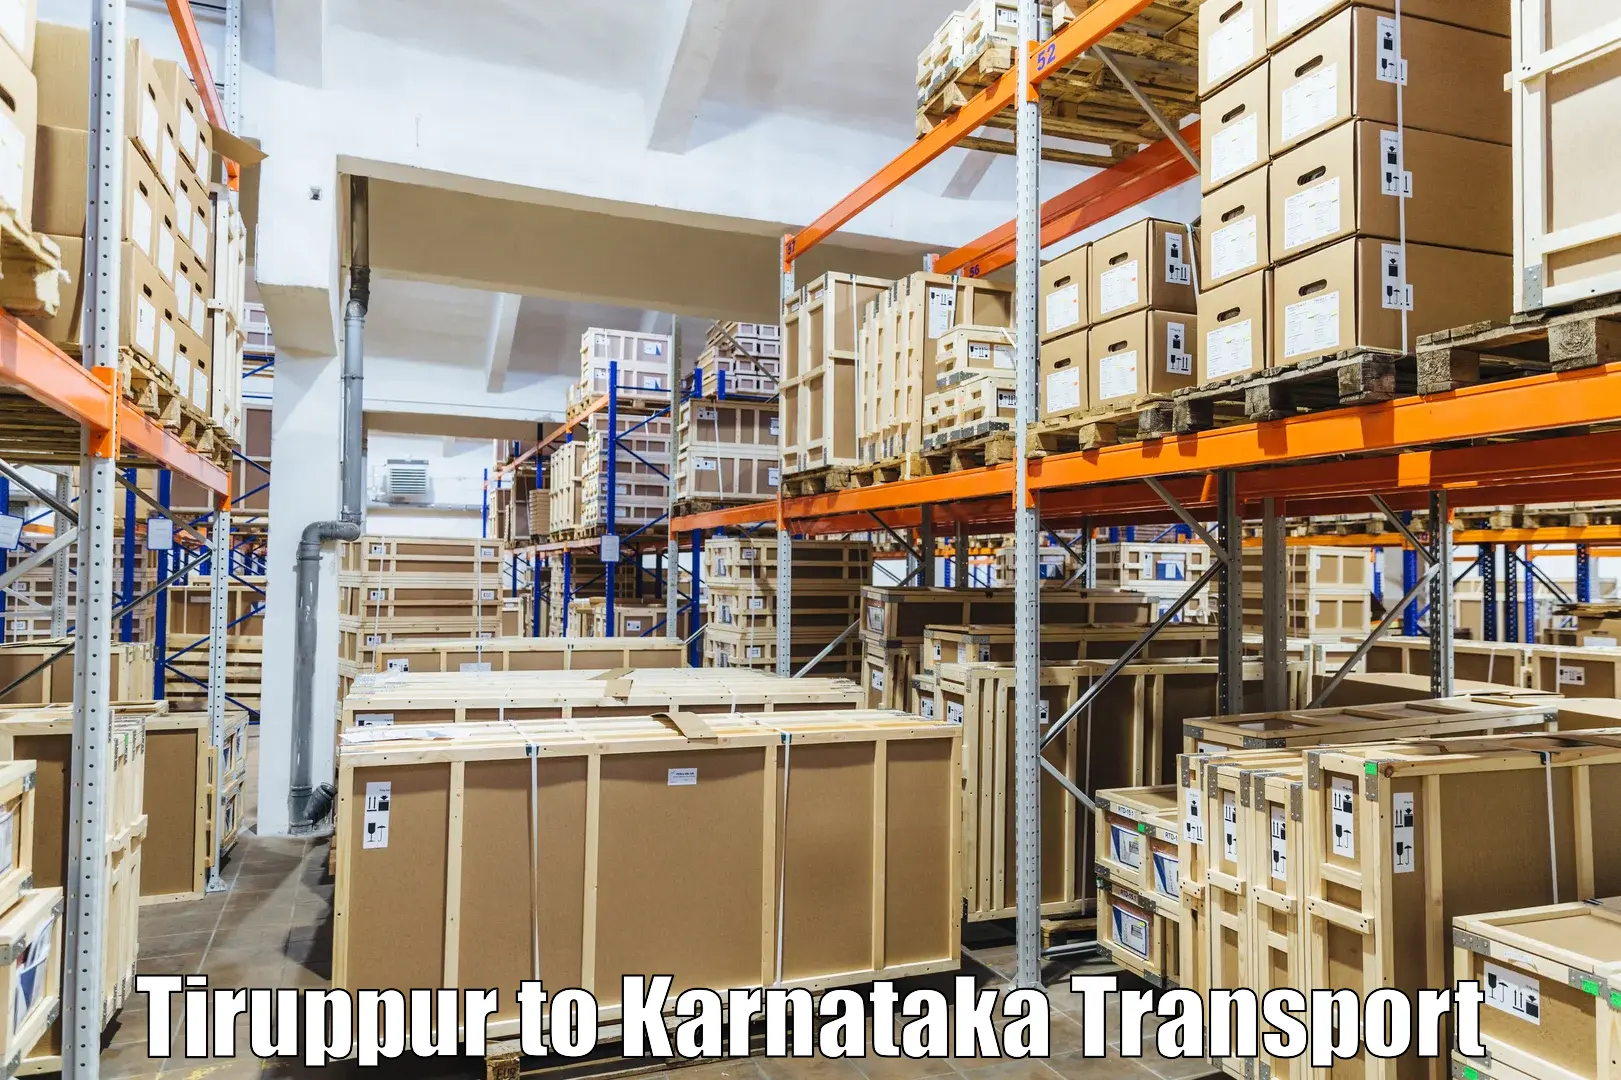 Two wheeler transport services Tiruppur to Karnataka